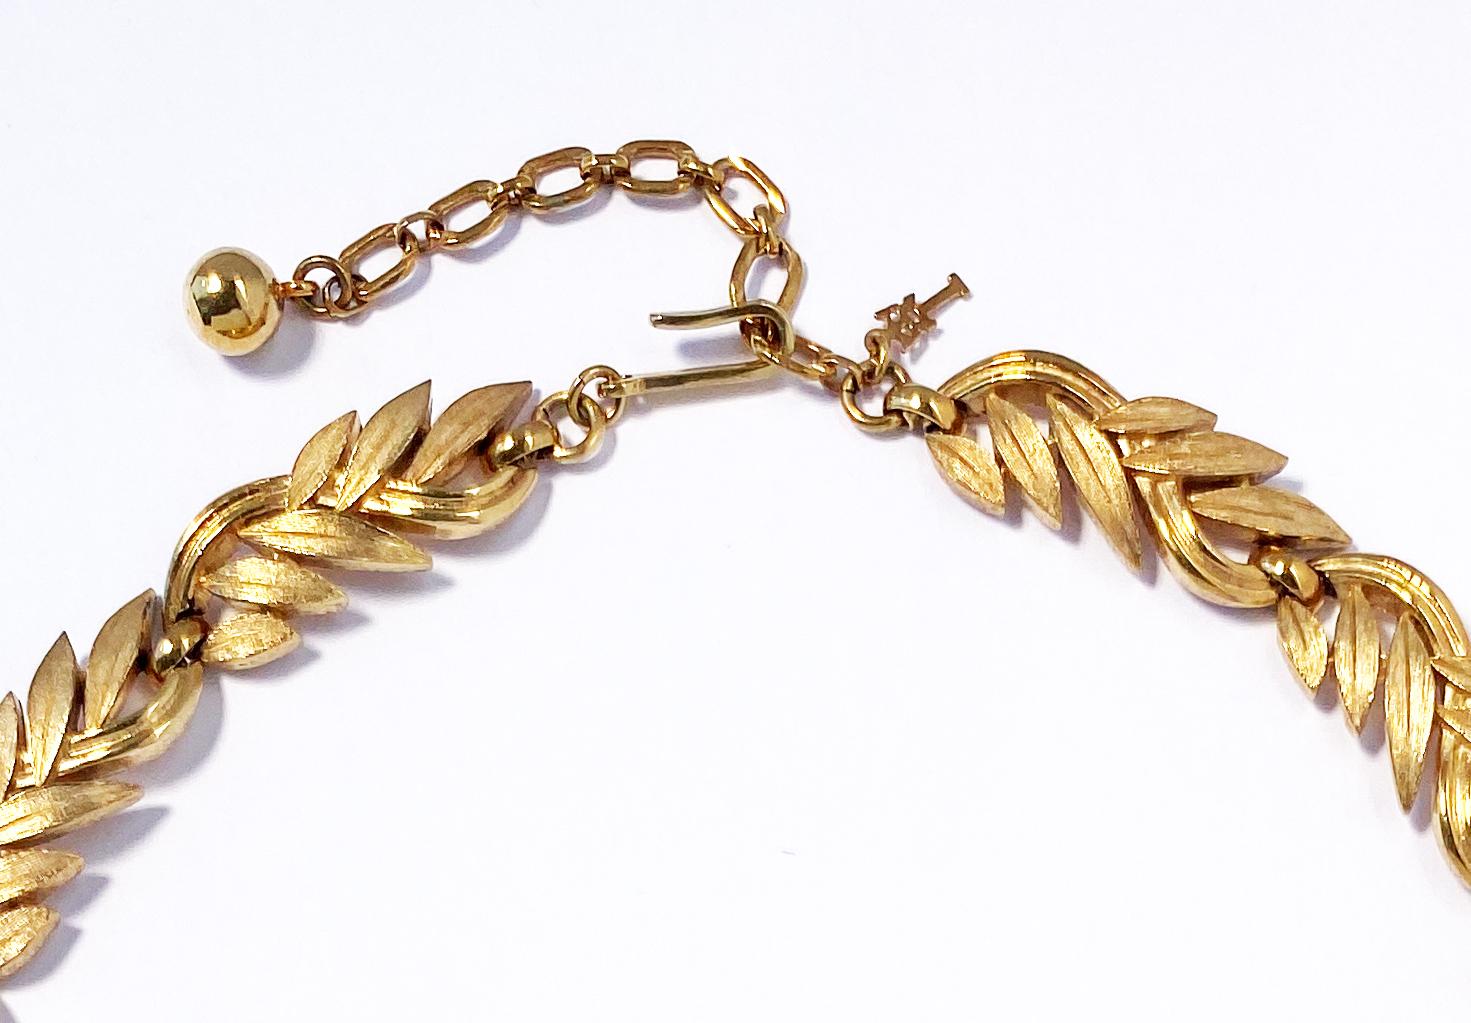 Vintage 1960s Trifari botanische Motiv Blatt Halskette in Gold Platte.  Diese Halskette im Stil eines Kragens besteht aus einem ineinandergreifenden Blatt- und Stängelmuster mit einer Kombination aus gebürsteten und hochglanzpolierten Oberflächen